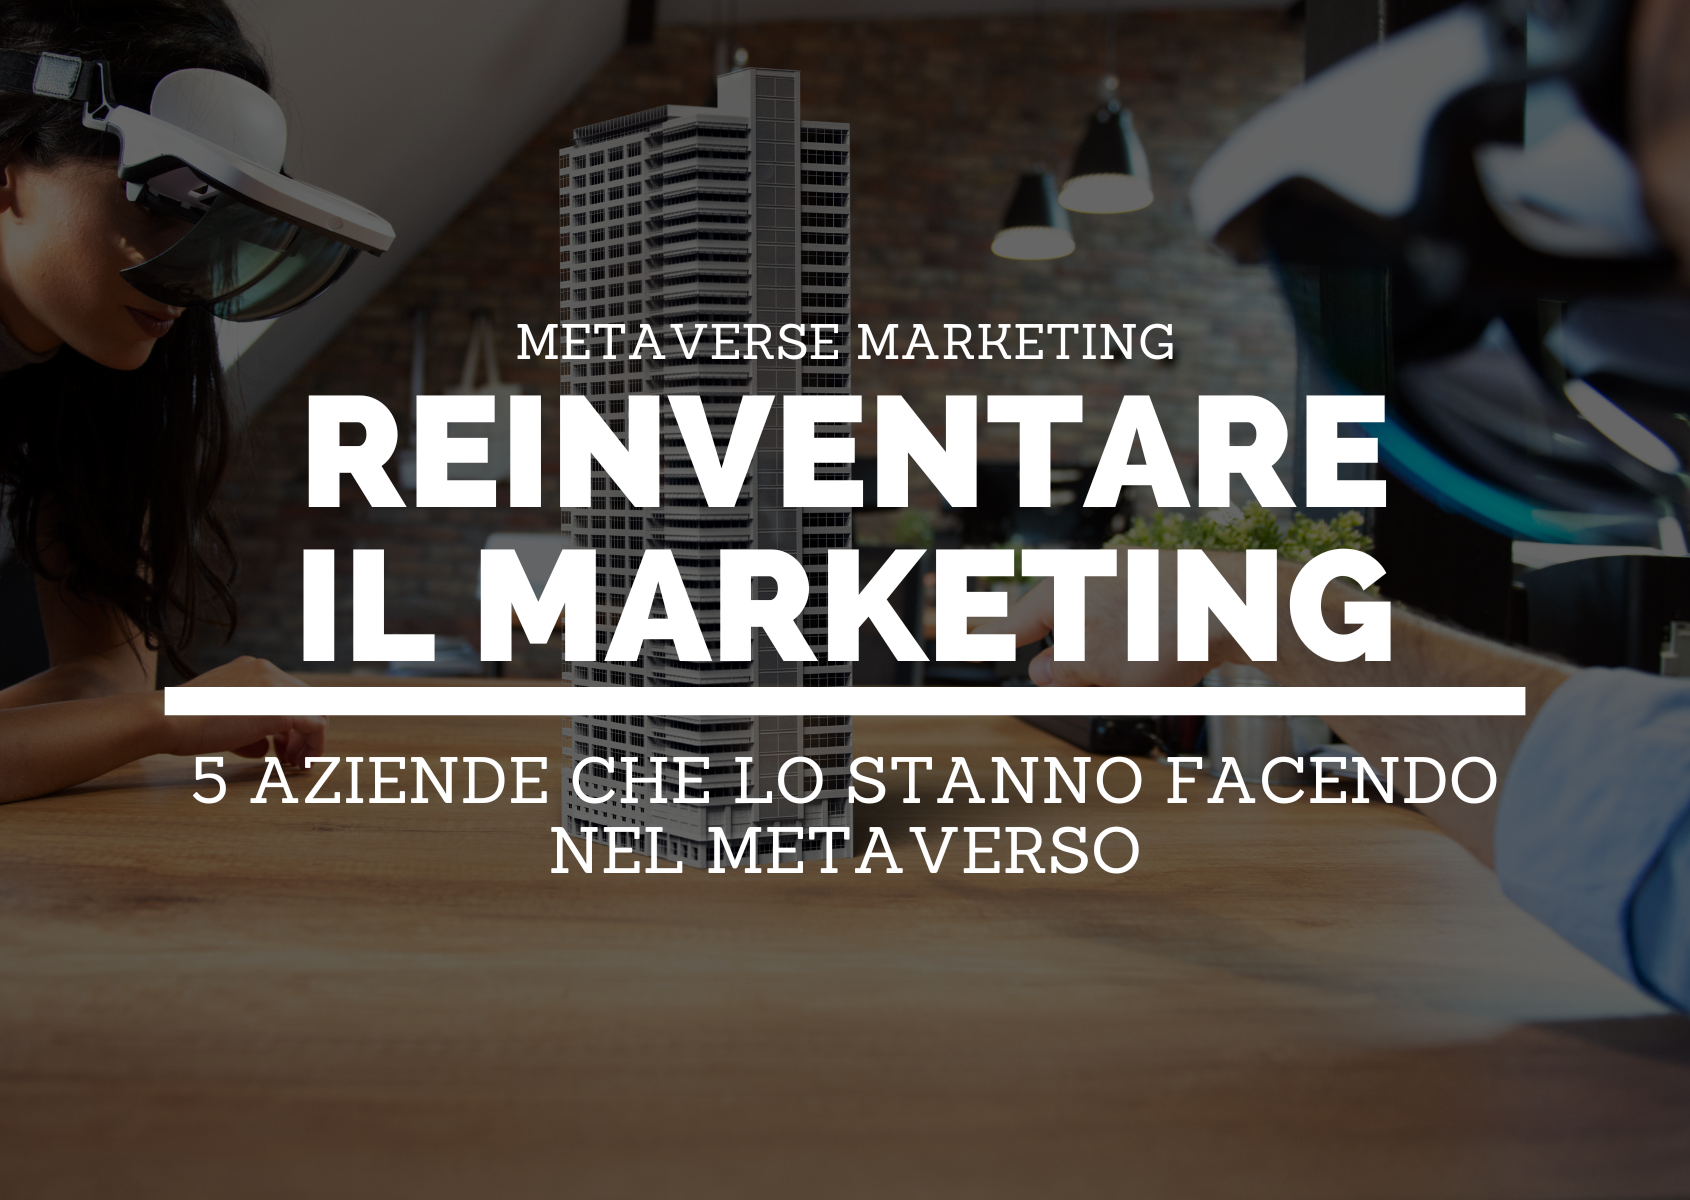 Reinventare-marketing-metaverso-HEADER